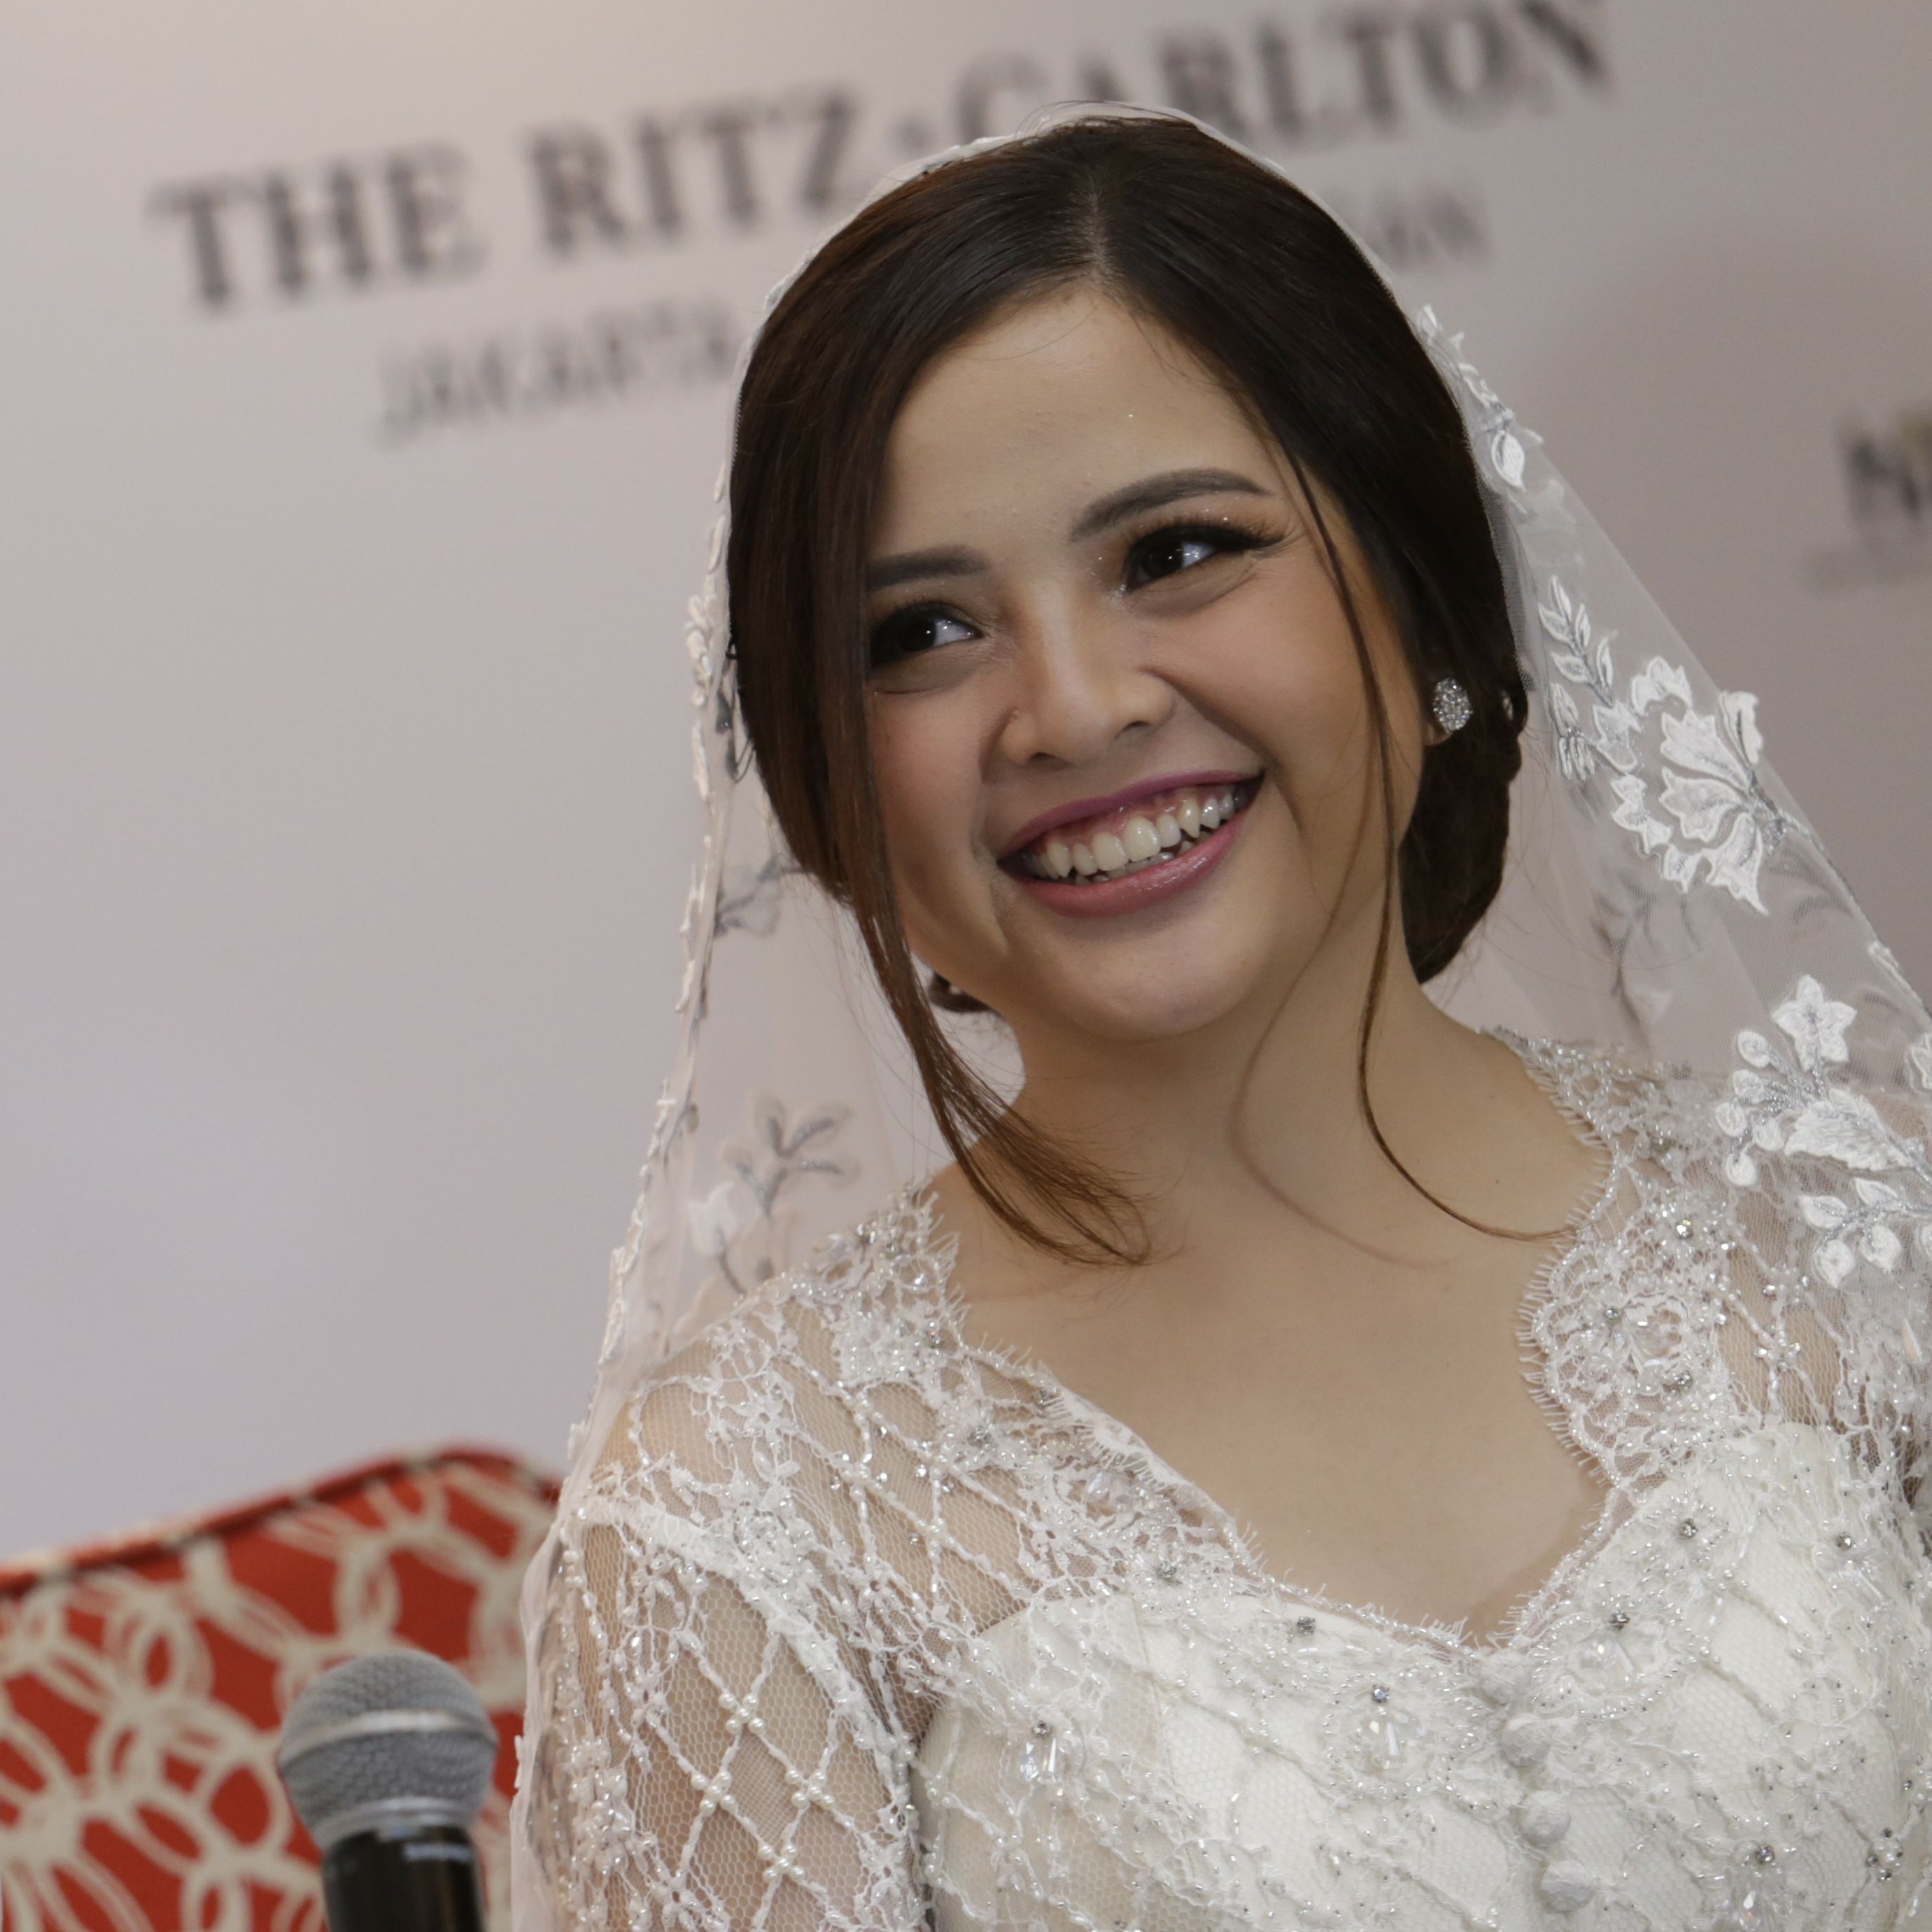 Resmi Menikah Tasya Kamila Ungkap Jika Ini Adalah Dream Wedding Baginya